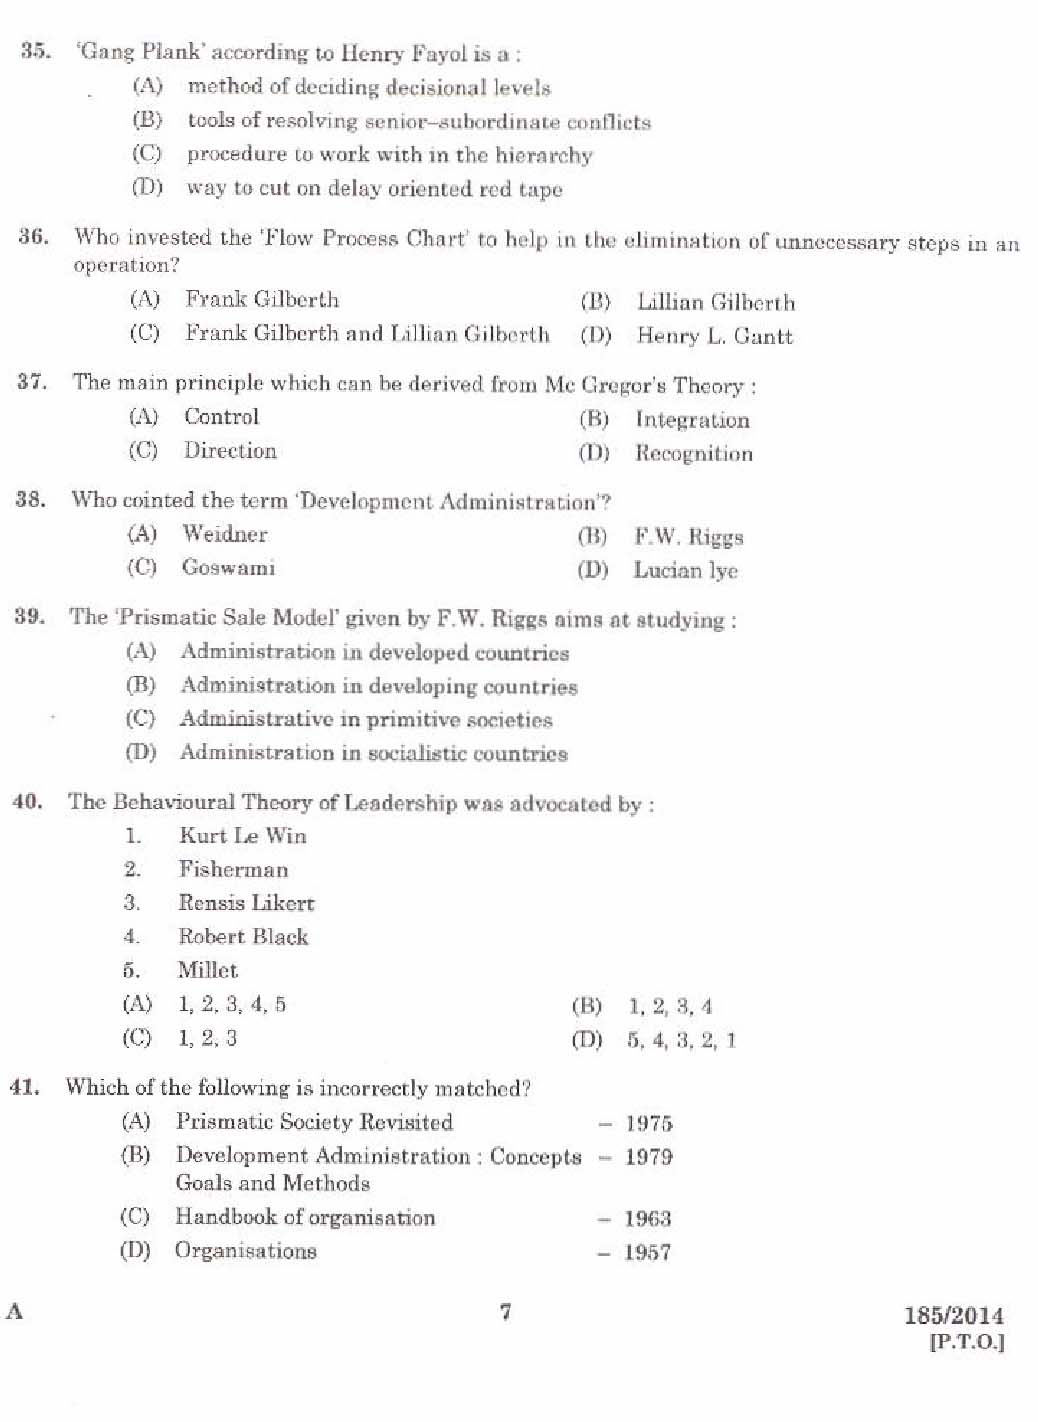 KPSC Lecturer in Public Administration Exam 1852014 5